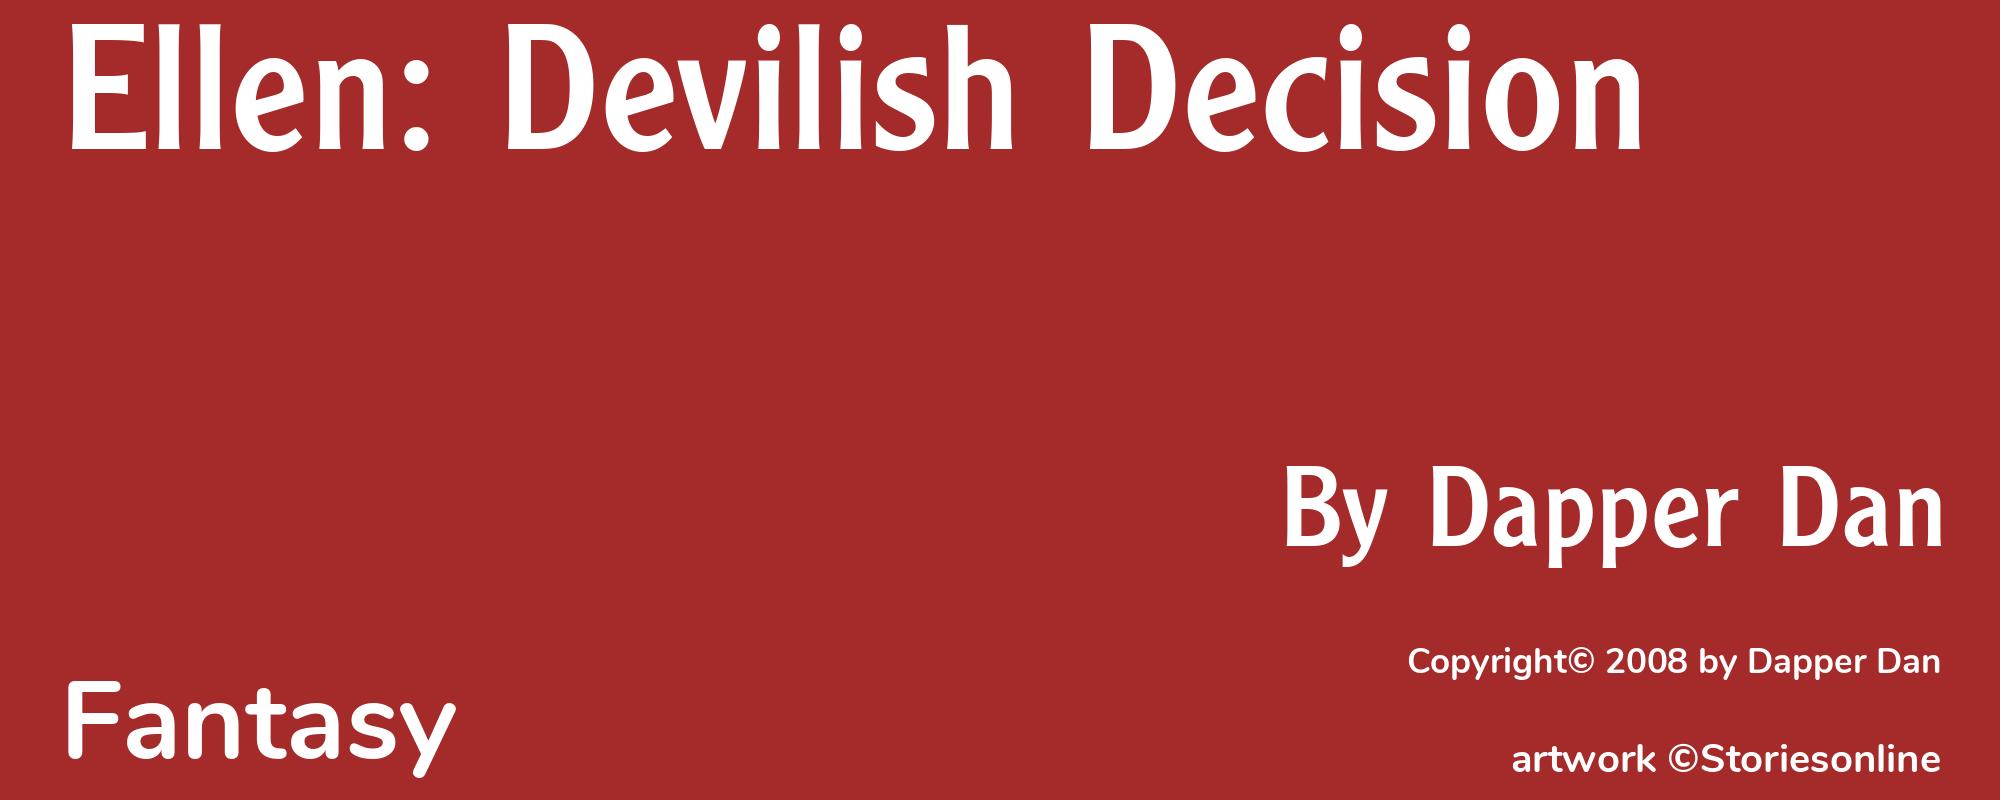 Ellen: Devilish Decision - Cover